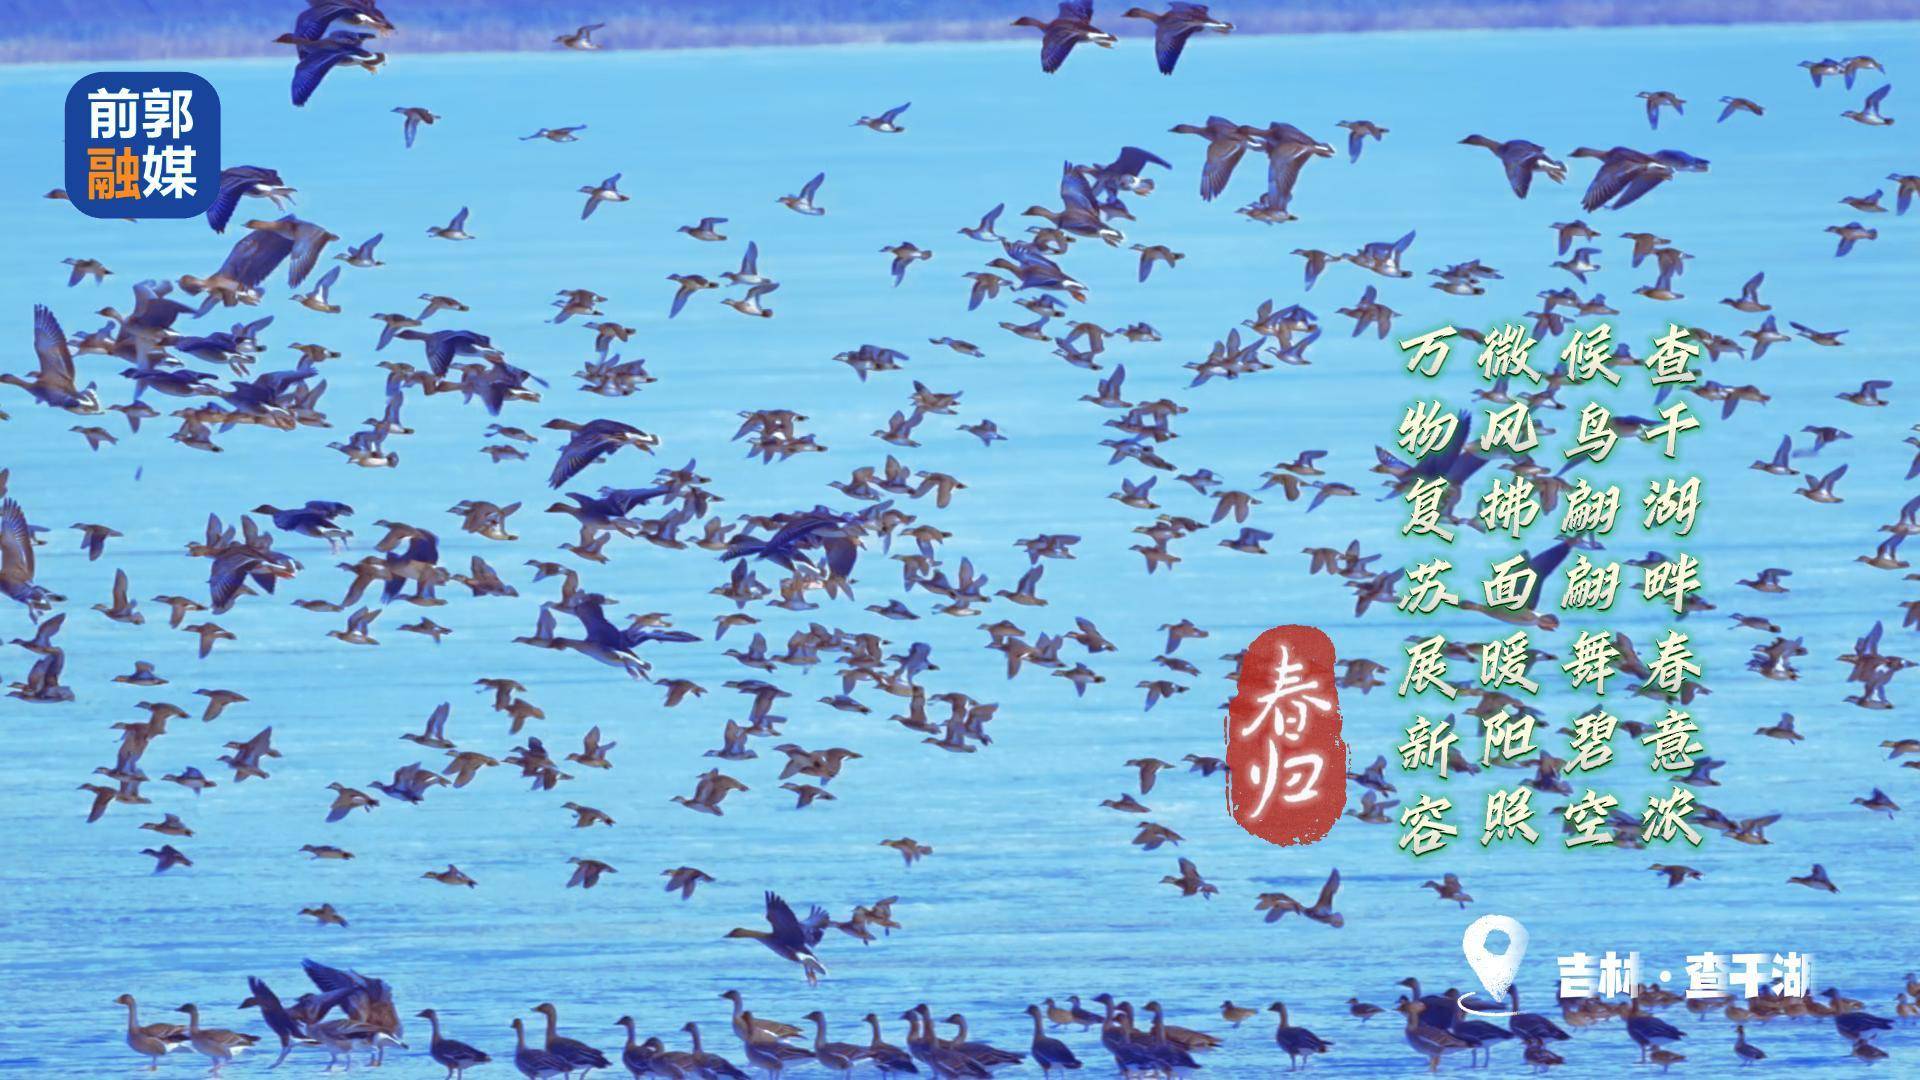 春归：查干湖鸟浪奇观 #查干湖候鸟 #查干湖 #查干湖之春
摄像：徐维山（富士相机H2S+150-600镜头）
制作：徐